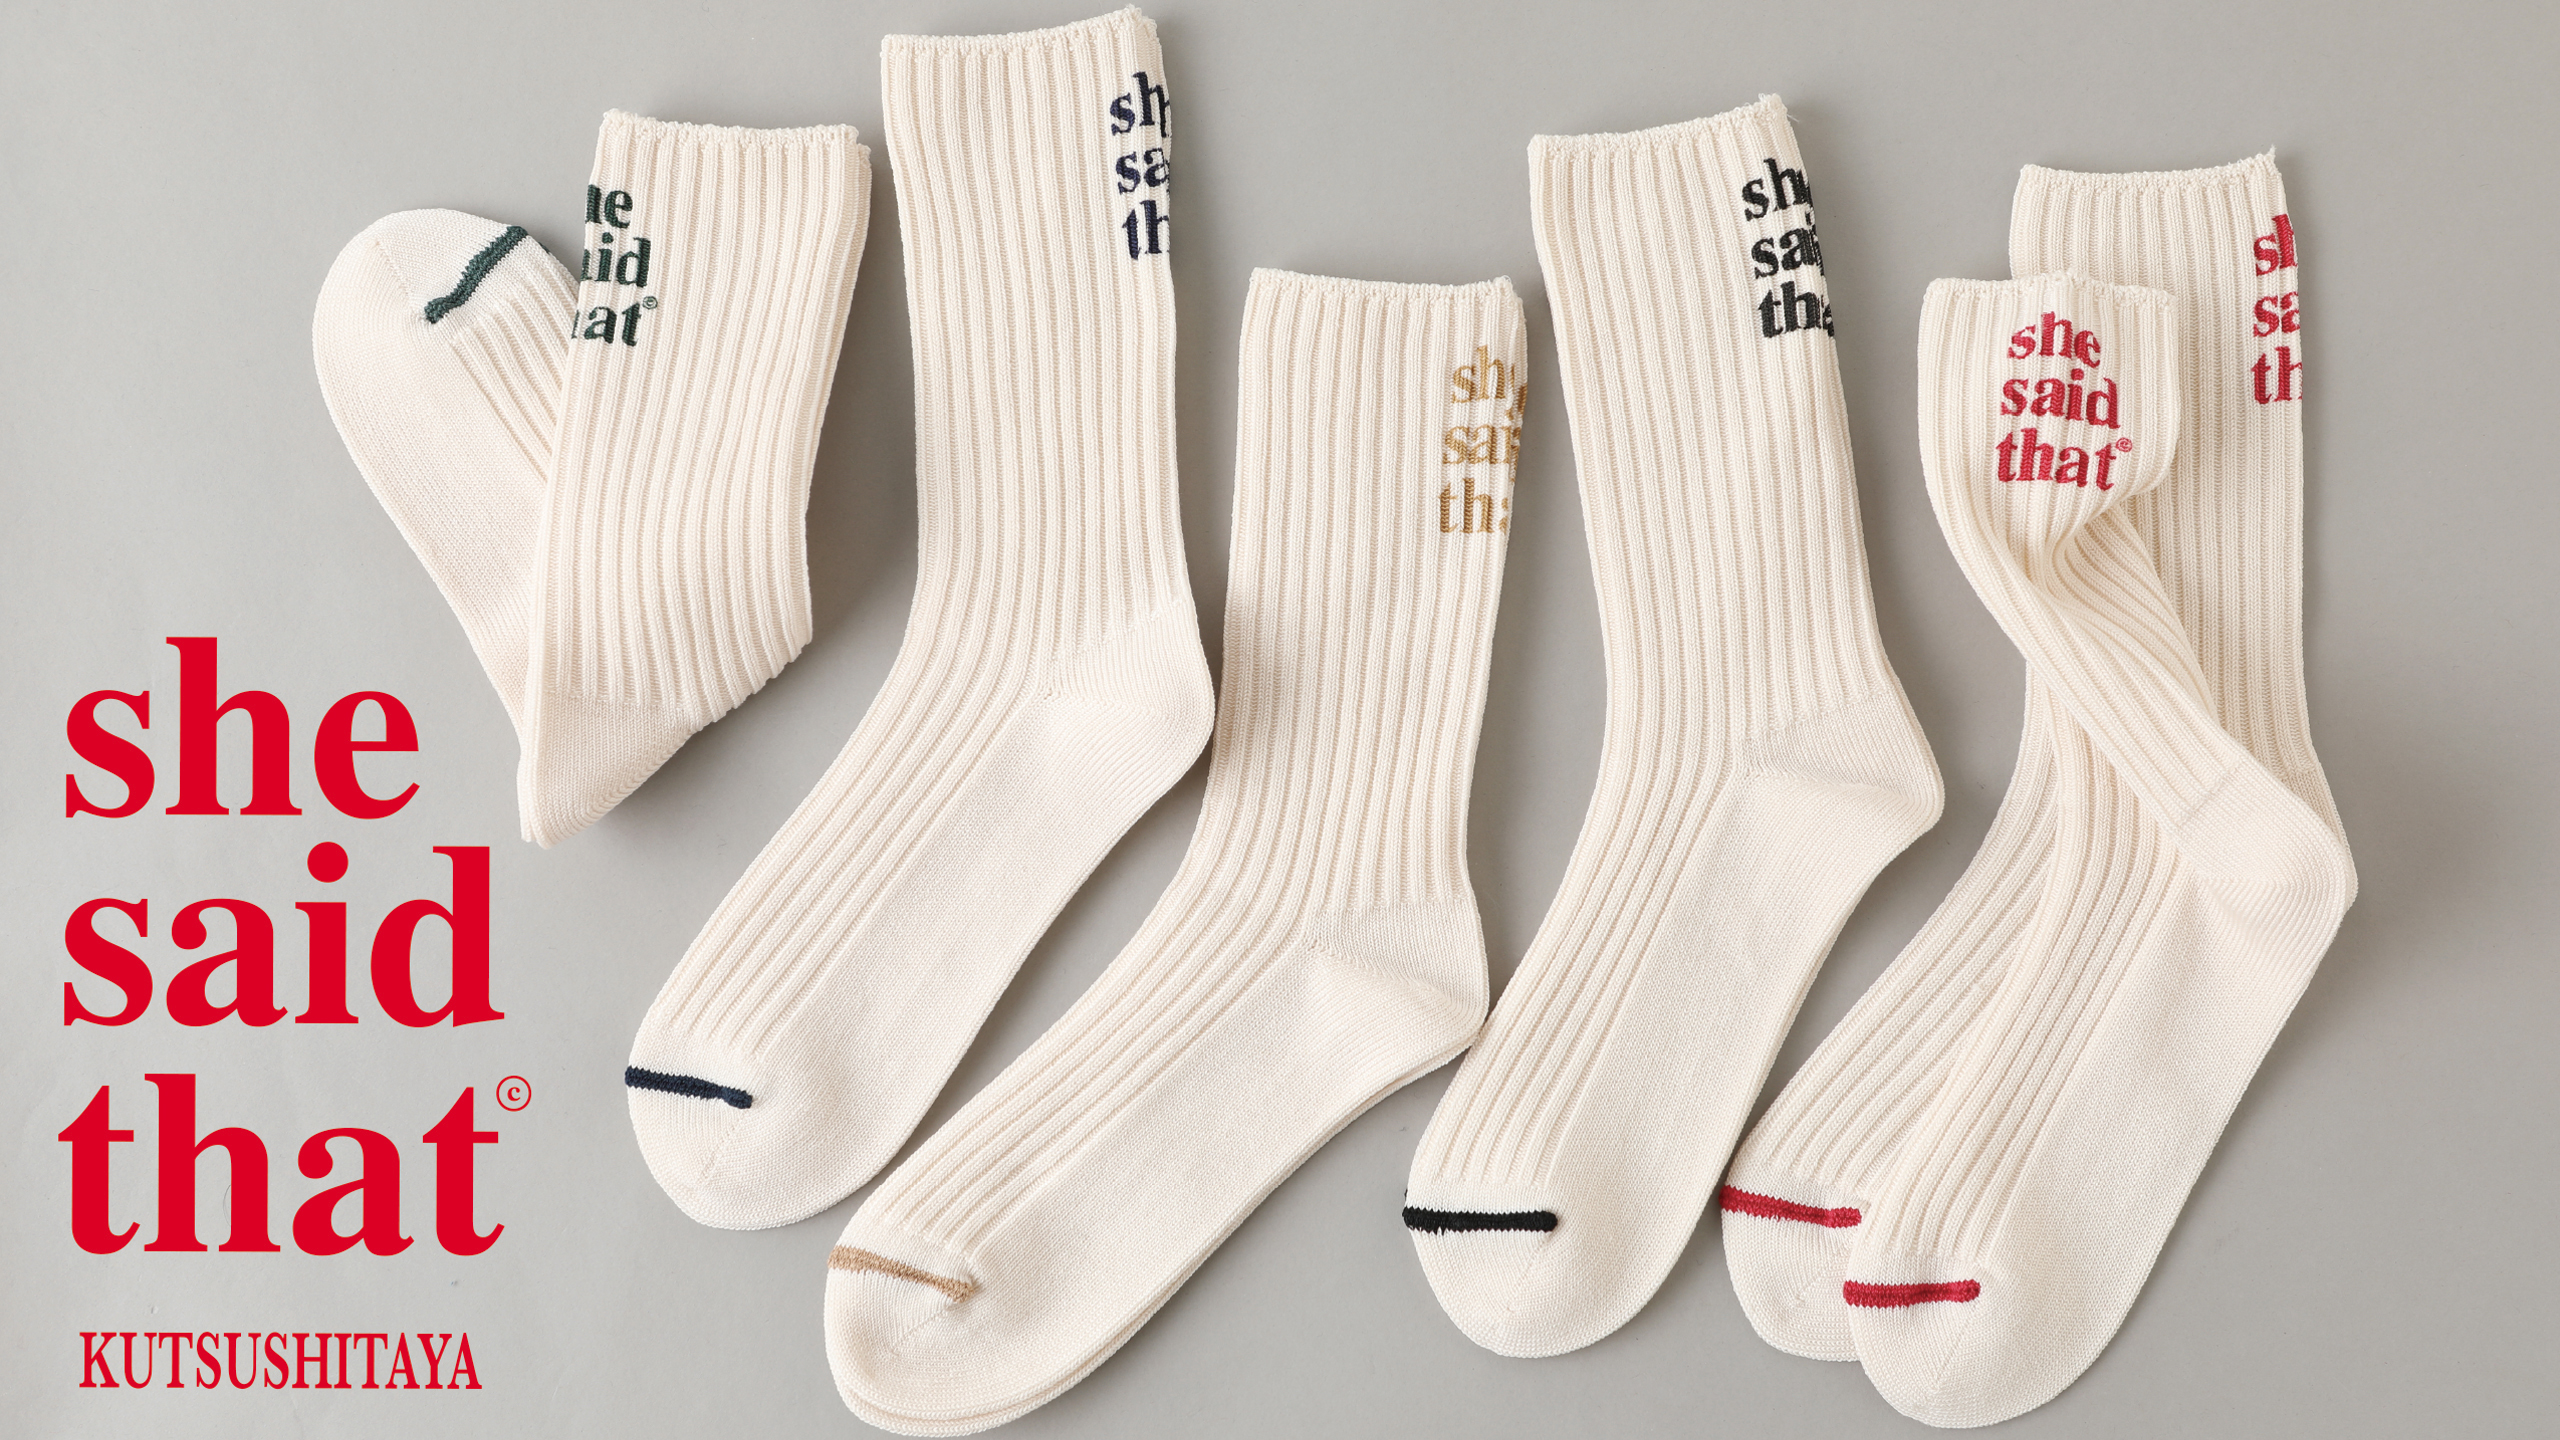 韓国の人気ブランド She Said That 靴下屋コラボレーション靴下発売決定 タビオ株式会社のプレスリリース